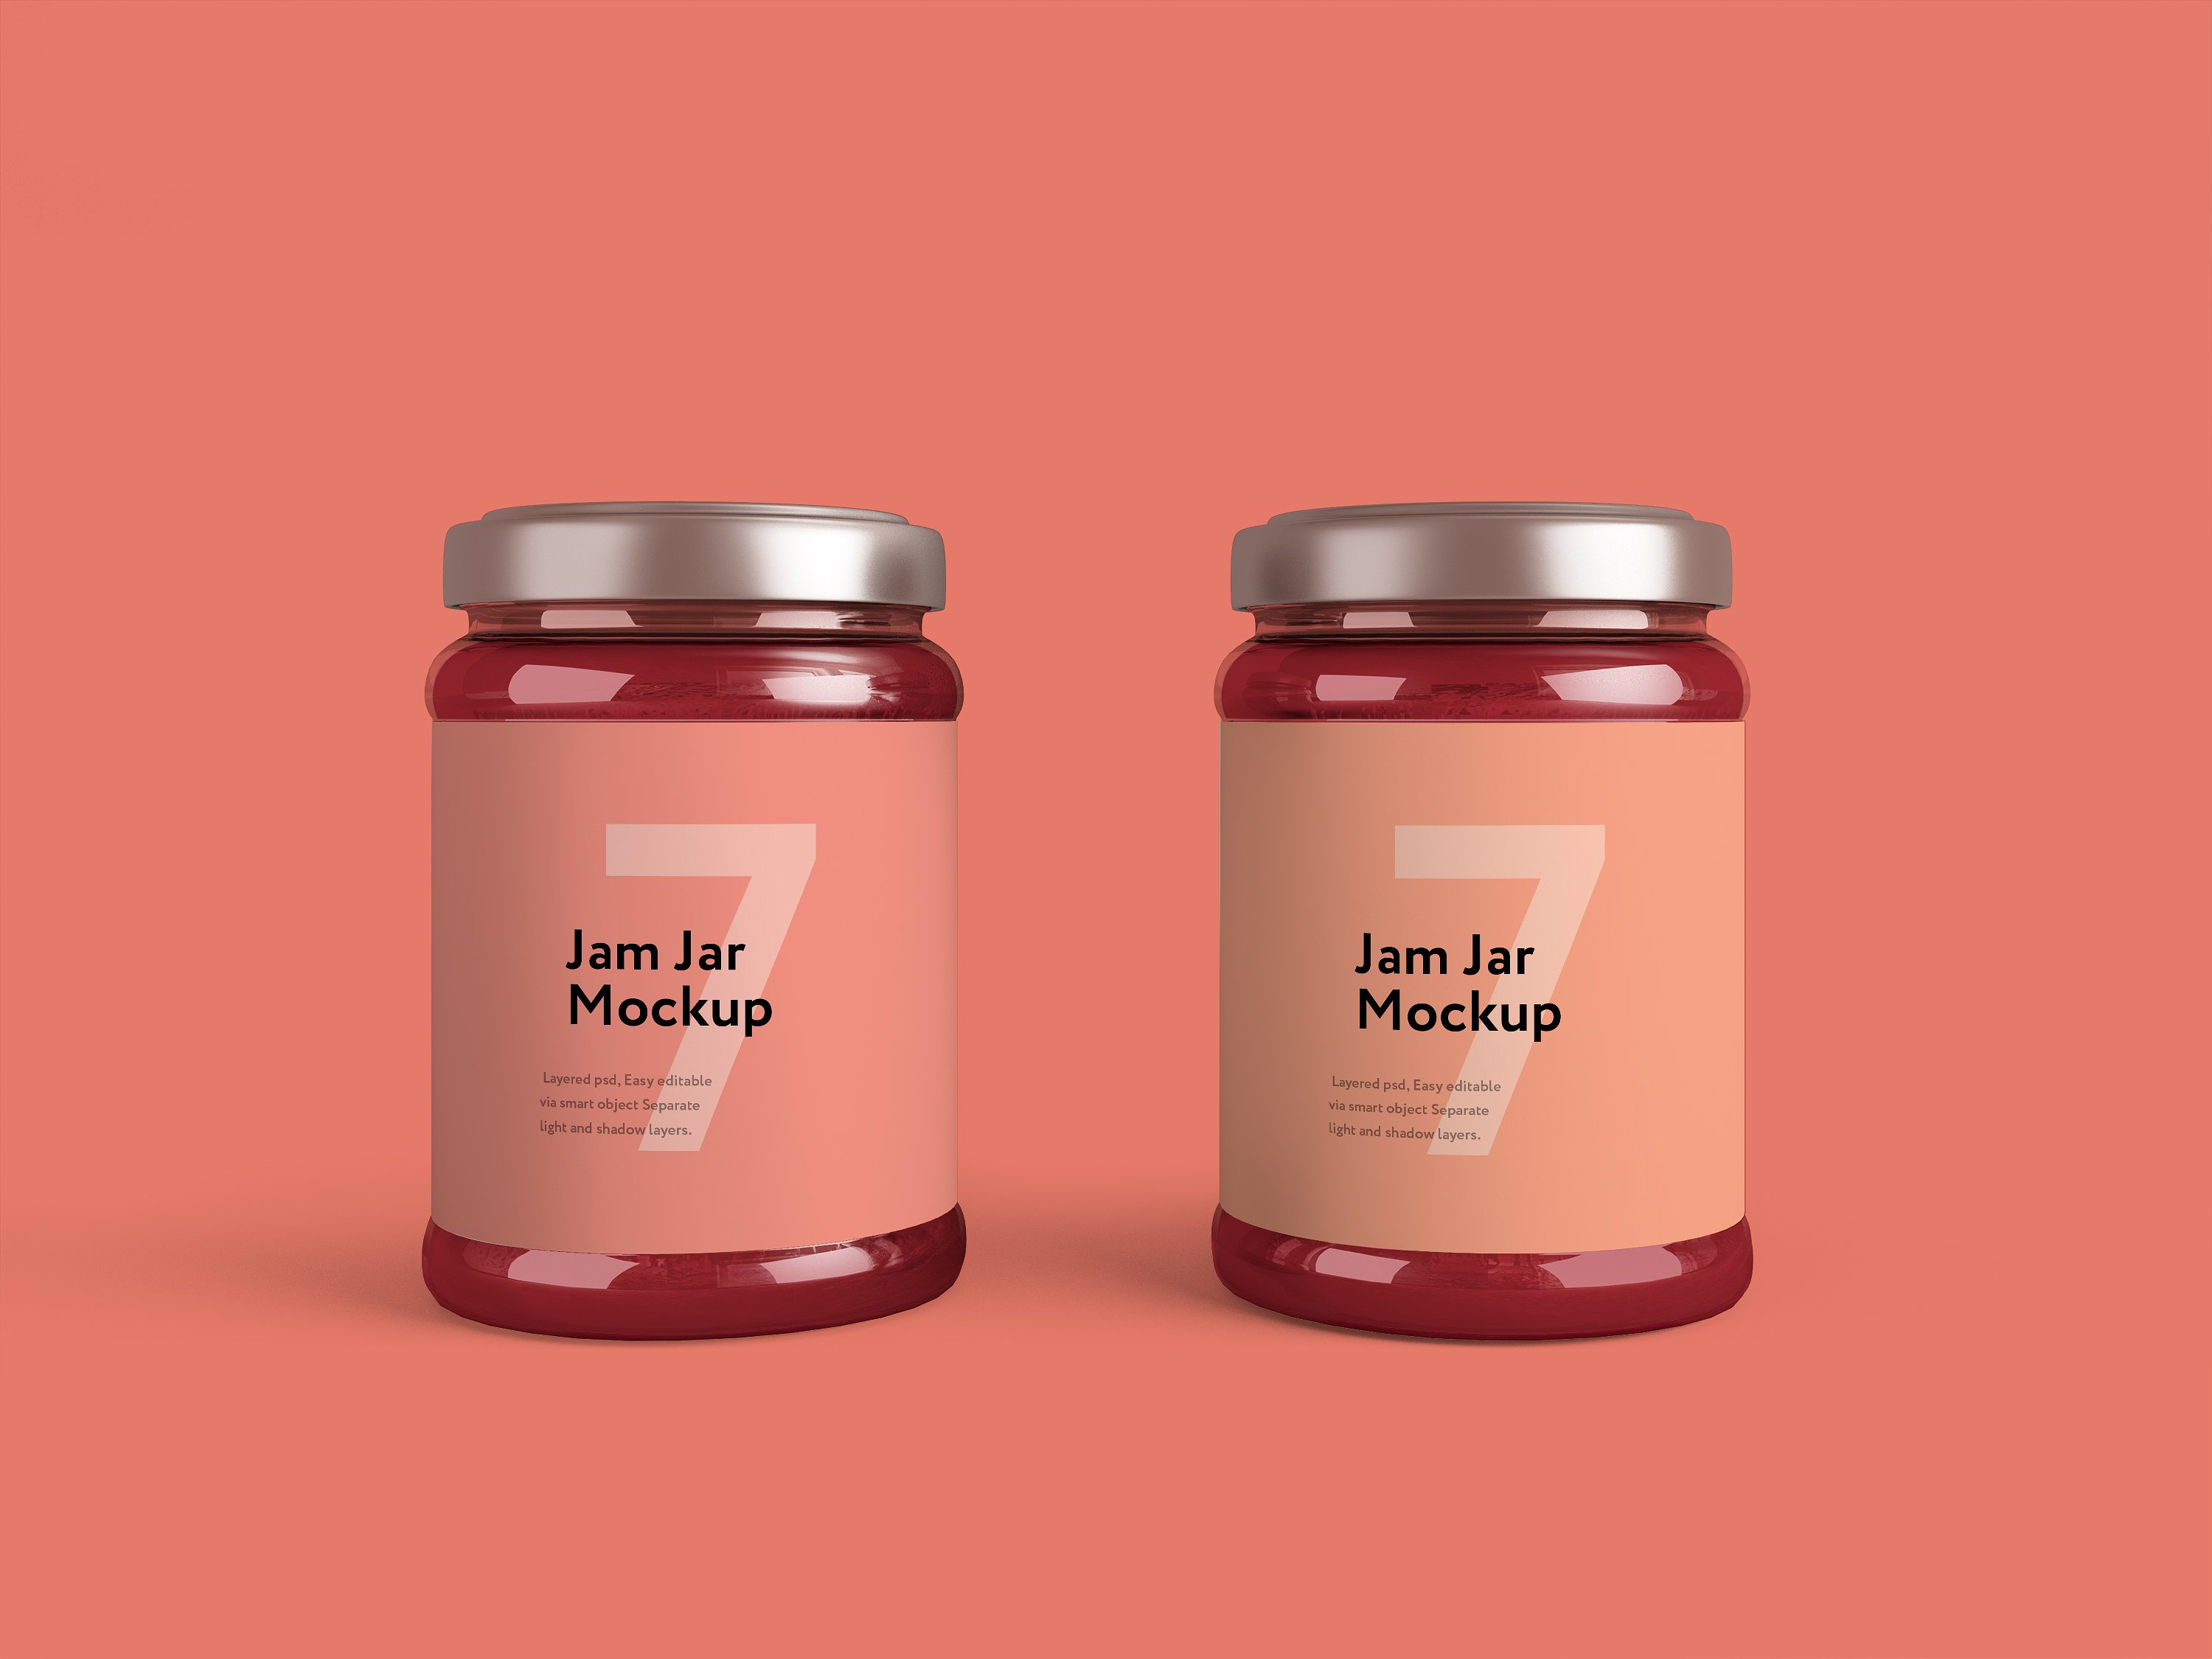 粉色果酱玻璃瓶外观设计效果图样机模板 Jam Jar Mockup插图